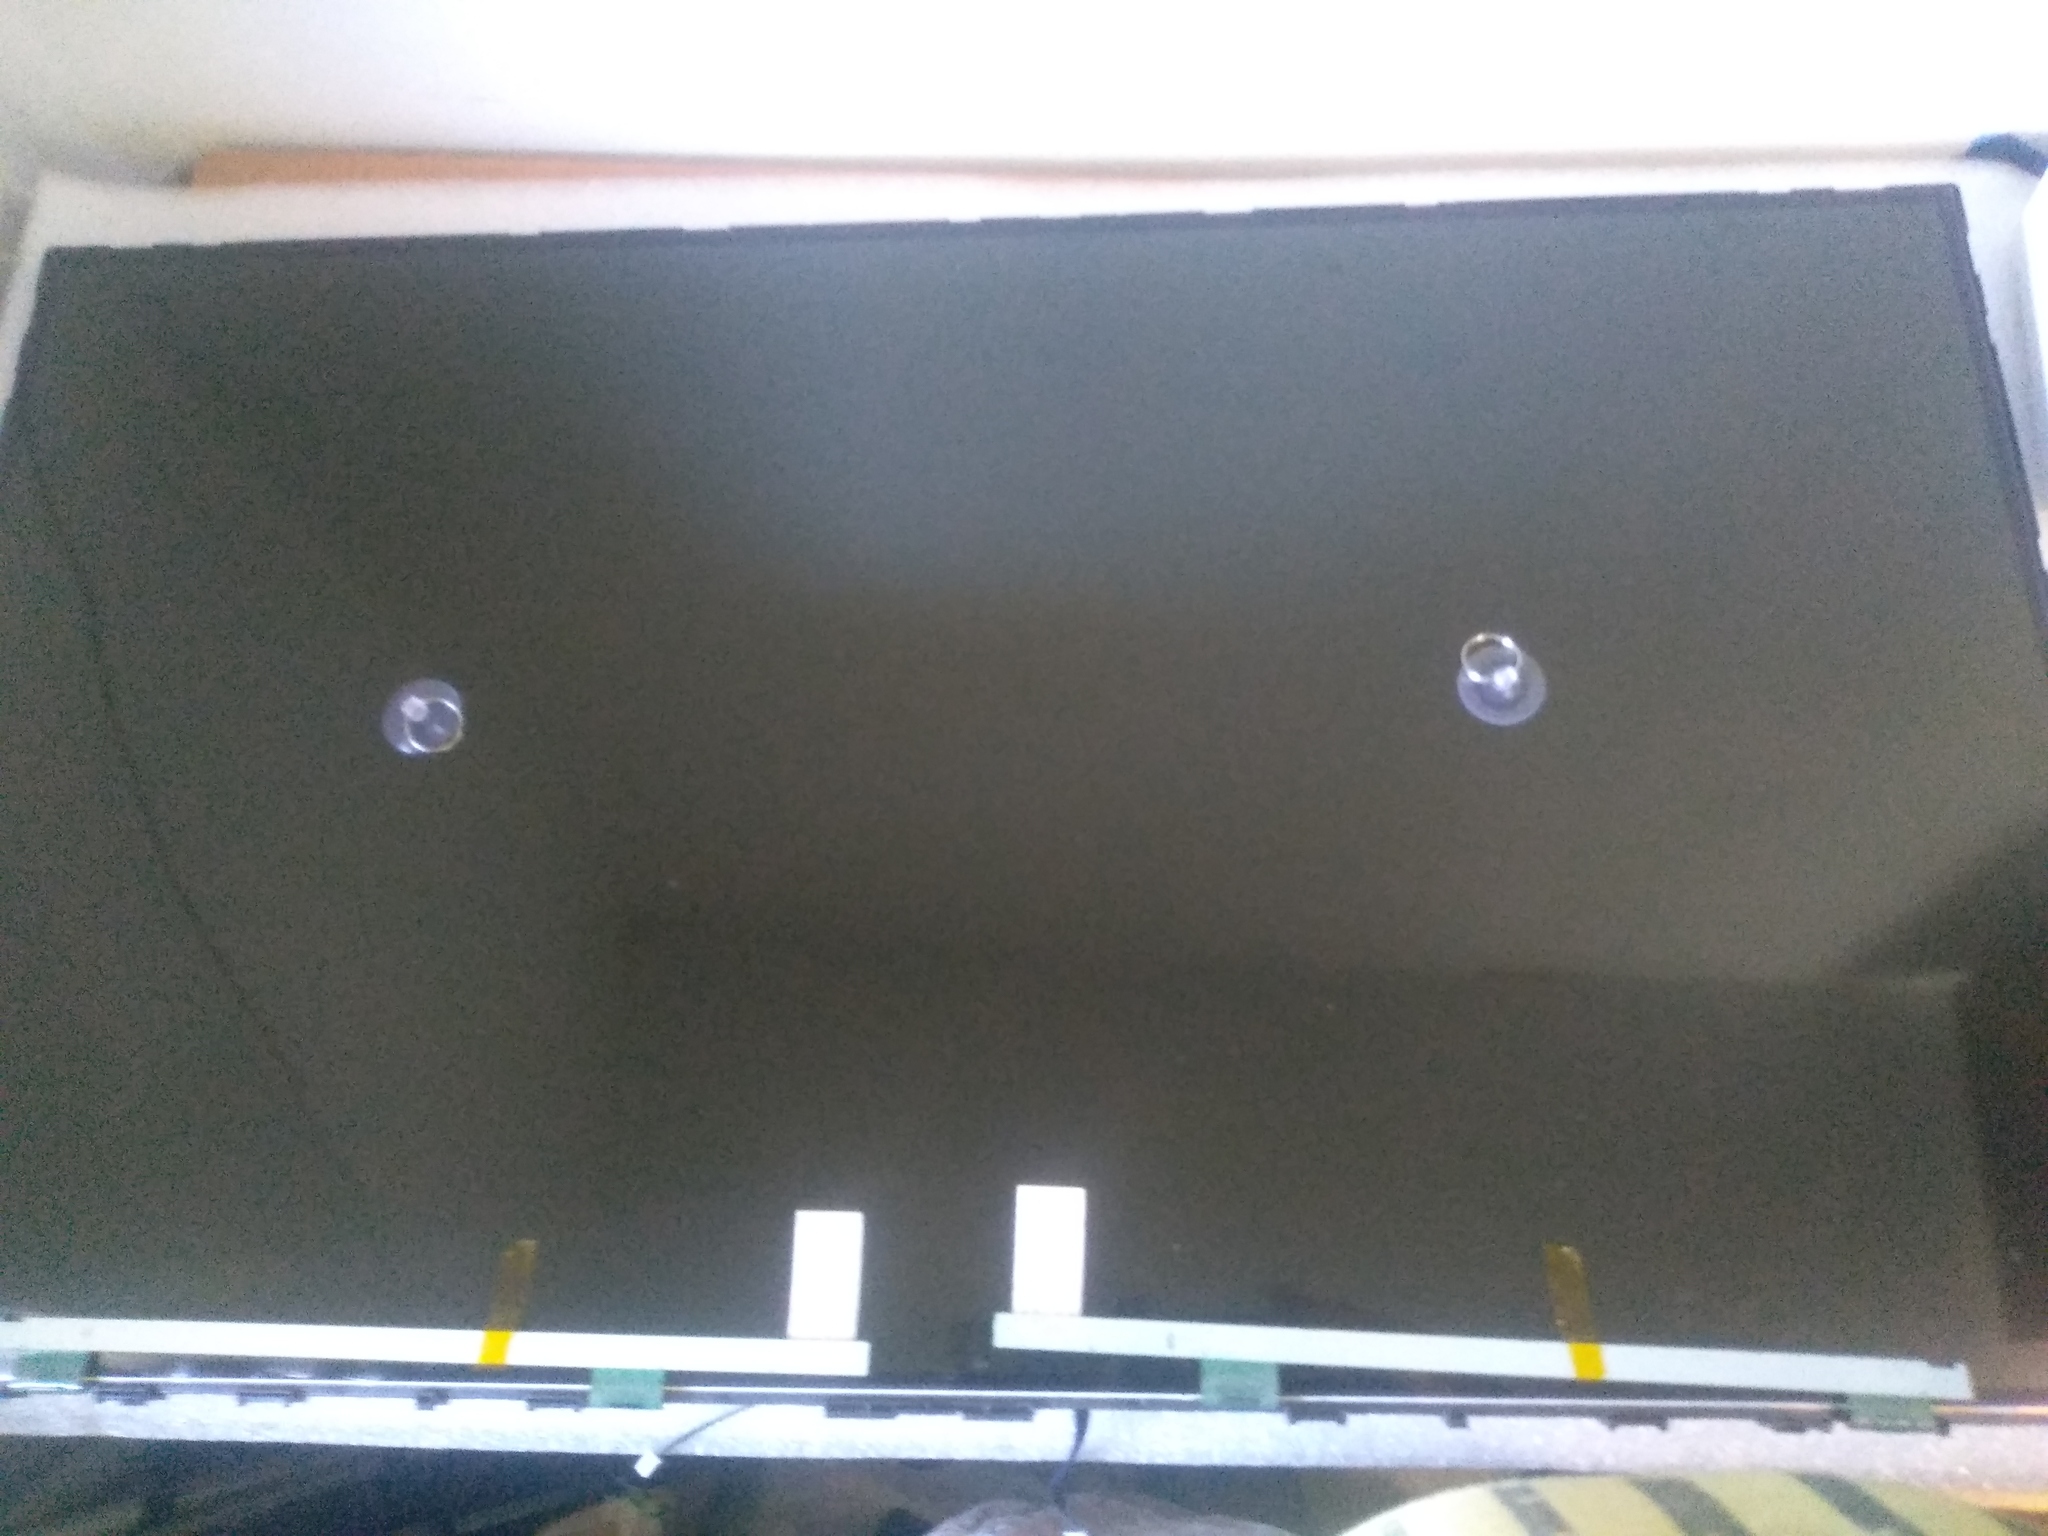 Можно ли отремонтировать, если разбился экран телевизора LG